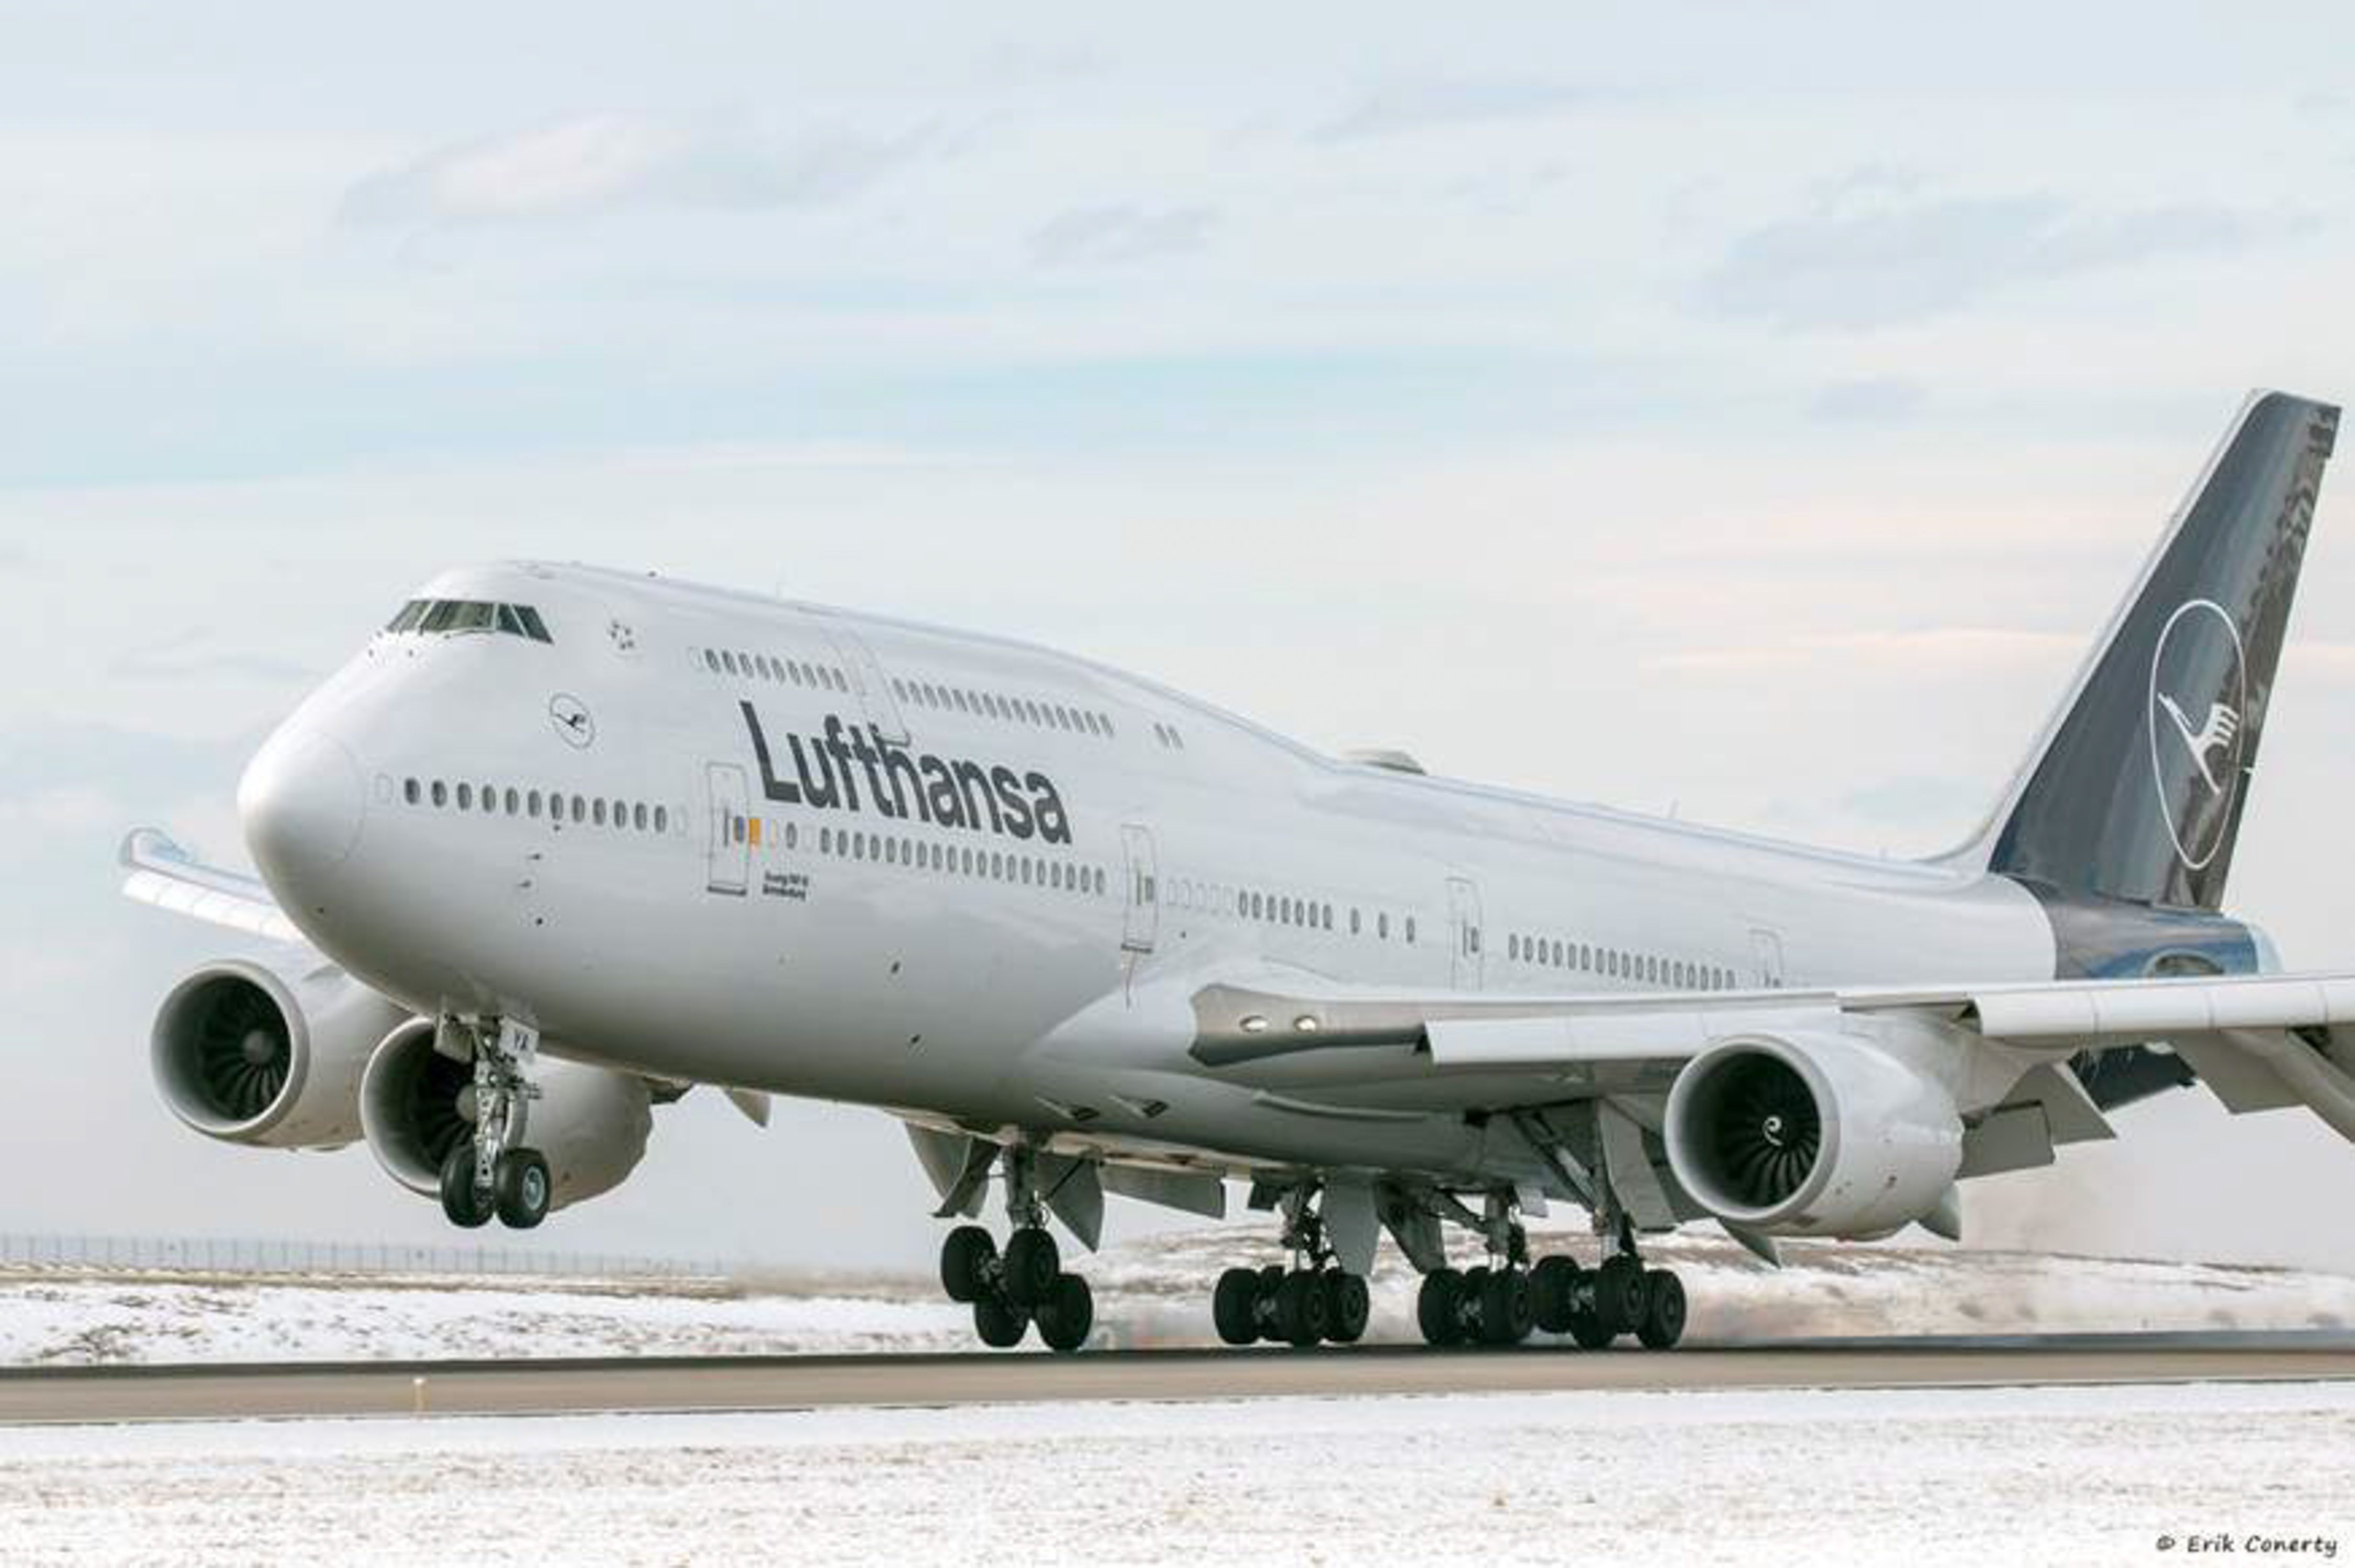 Lufthansa Boeing 747 in the snow